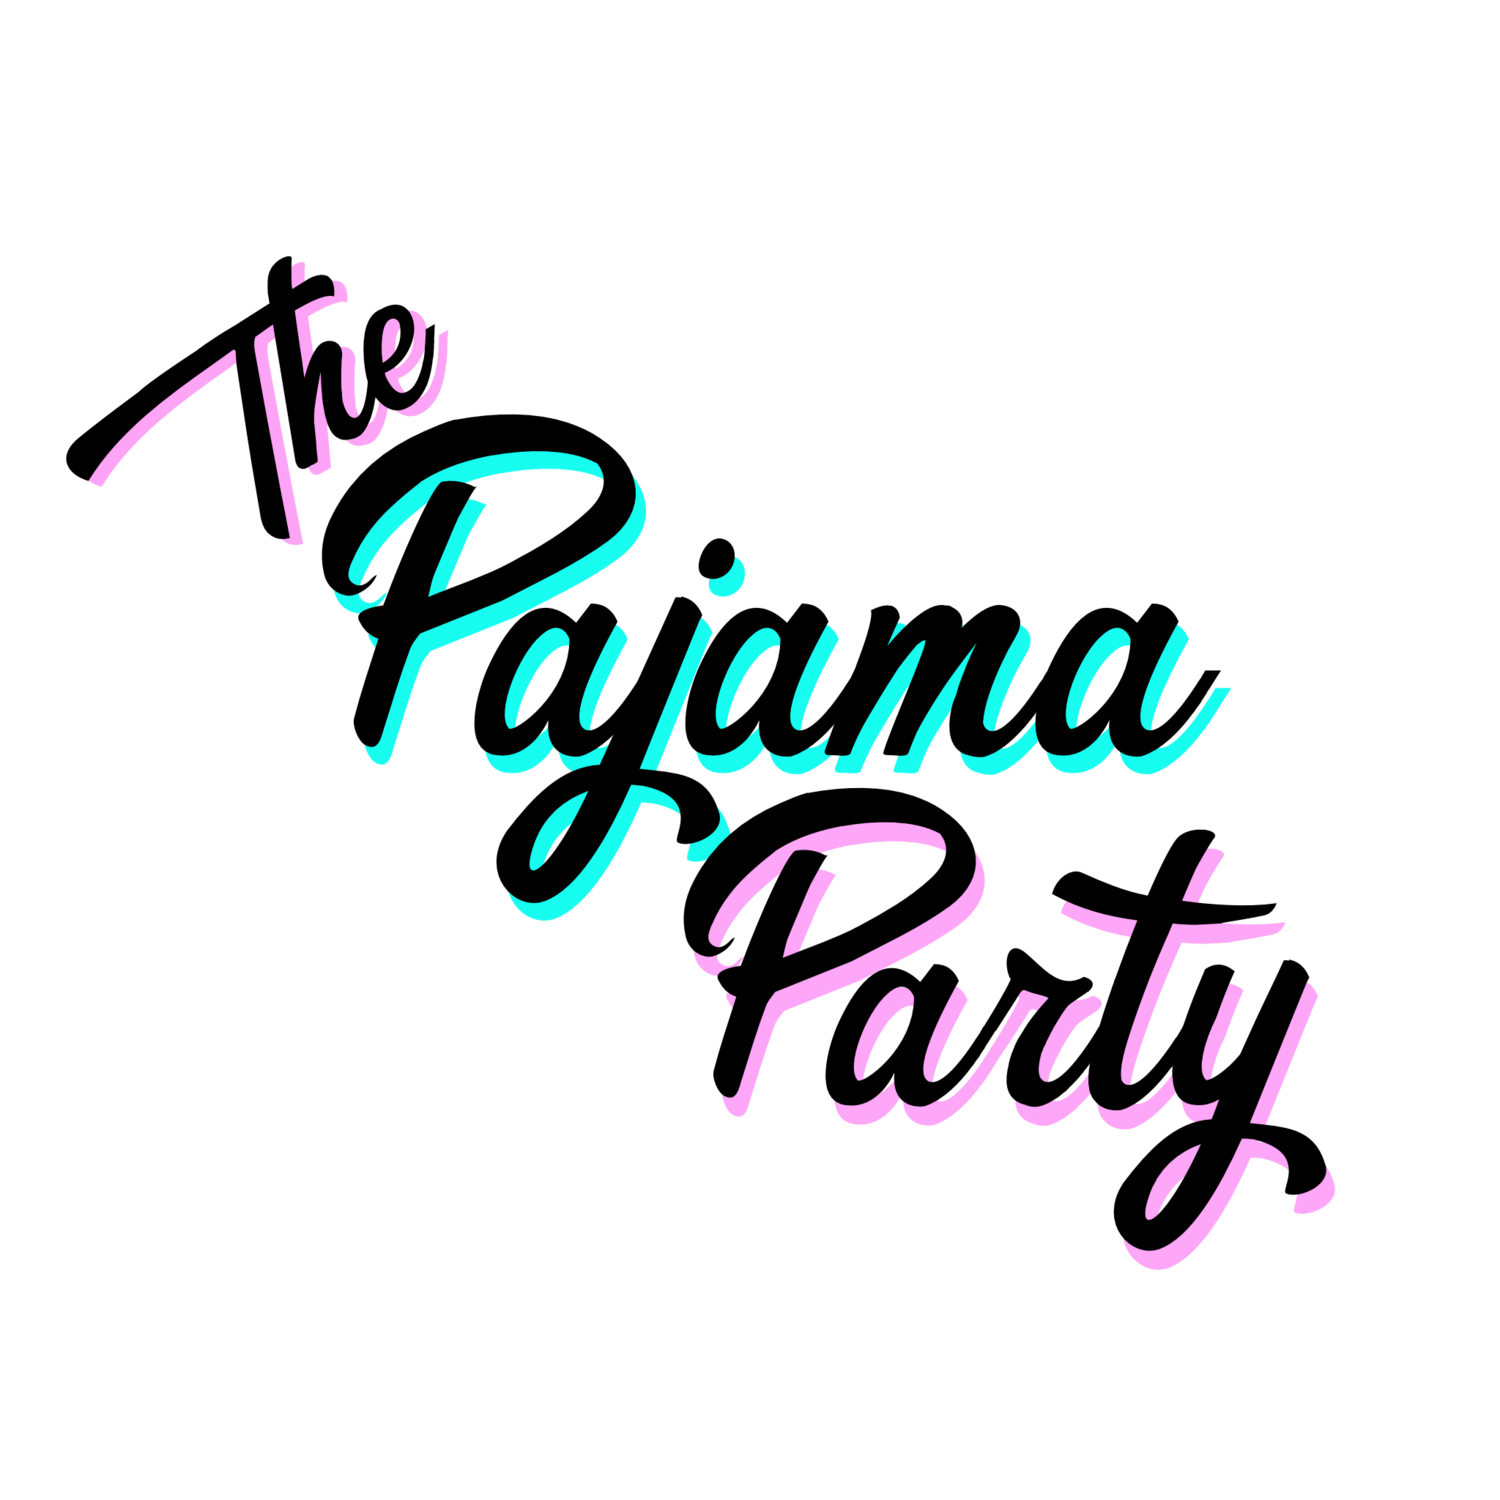 The Pajama Party